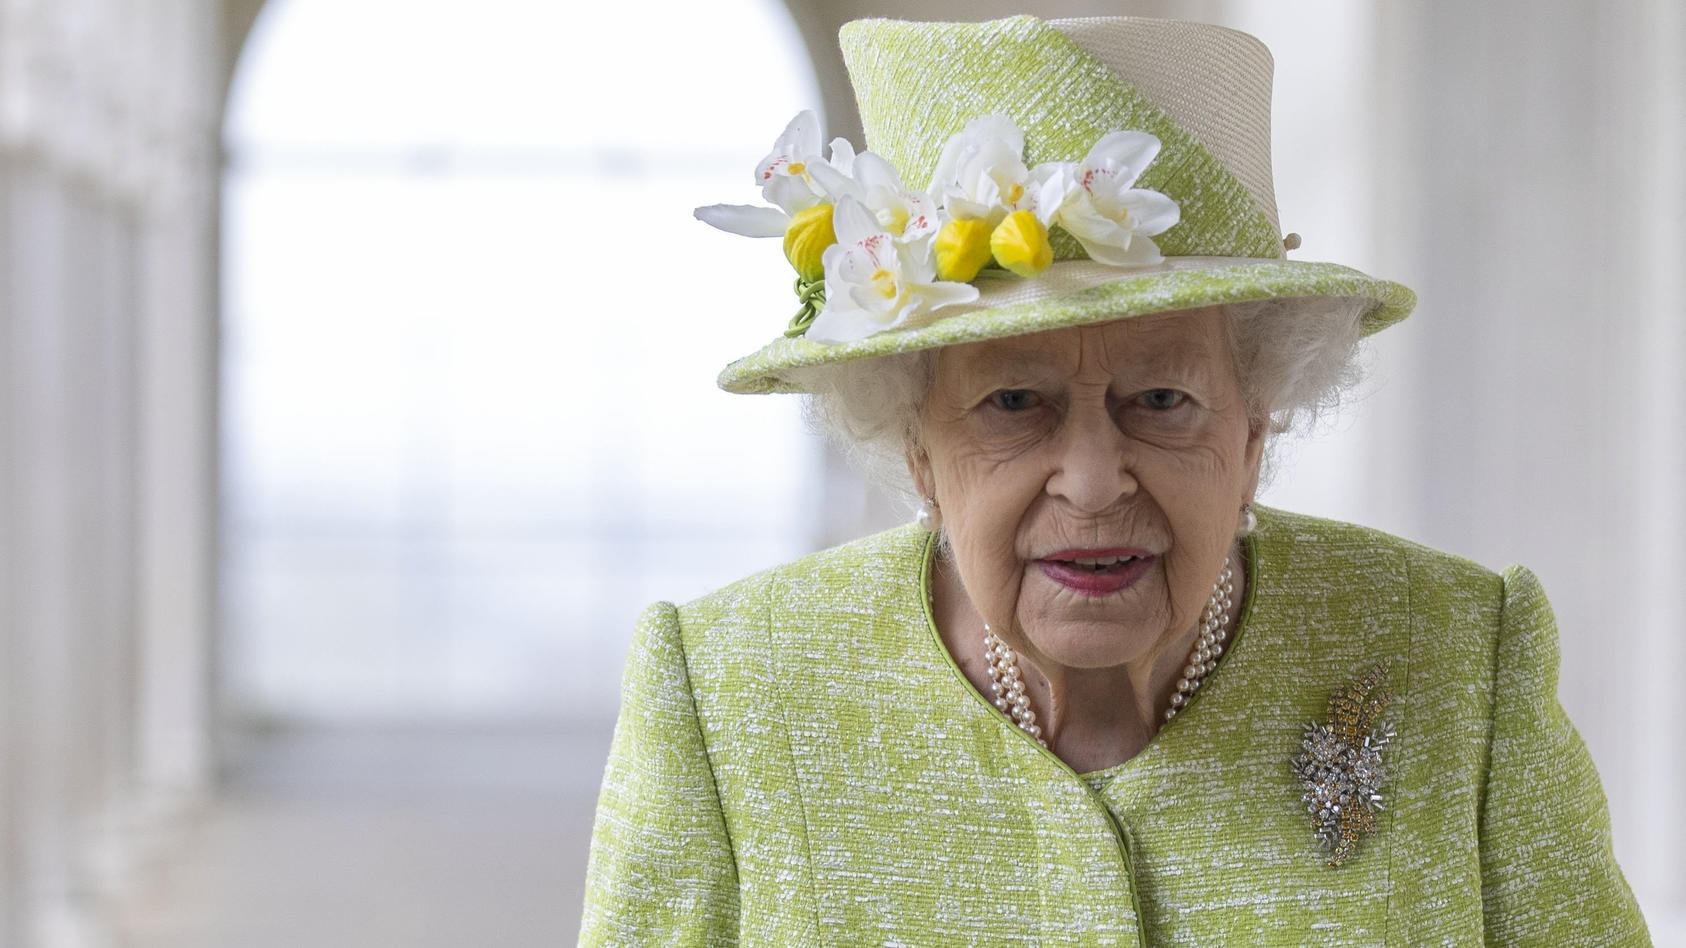 ARCHIV - 31.03.2021, Großbritannien, Runnymede: Die britische Königin Elizabeth II. besucht das Air Force-Gedenkmal im Rahmen eines Gottesdienstes anlässlich des hundertjährigen Bestehens der Royal Australian Air Force. Queen Elizabeth II. hat erneut